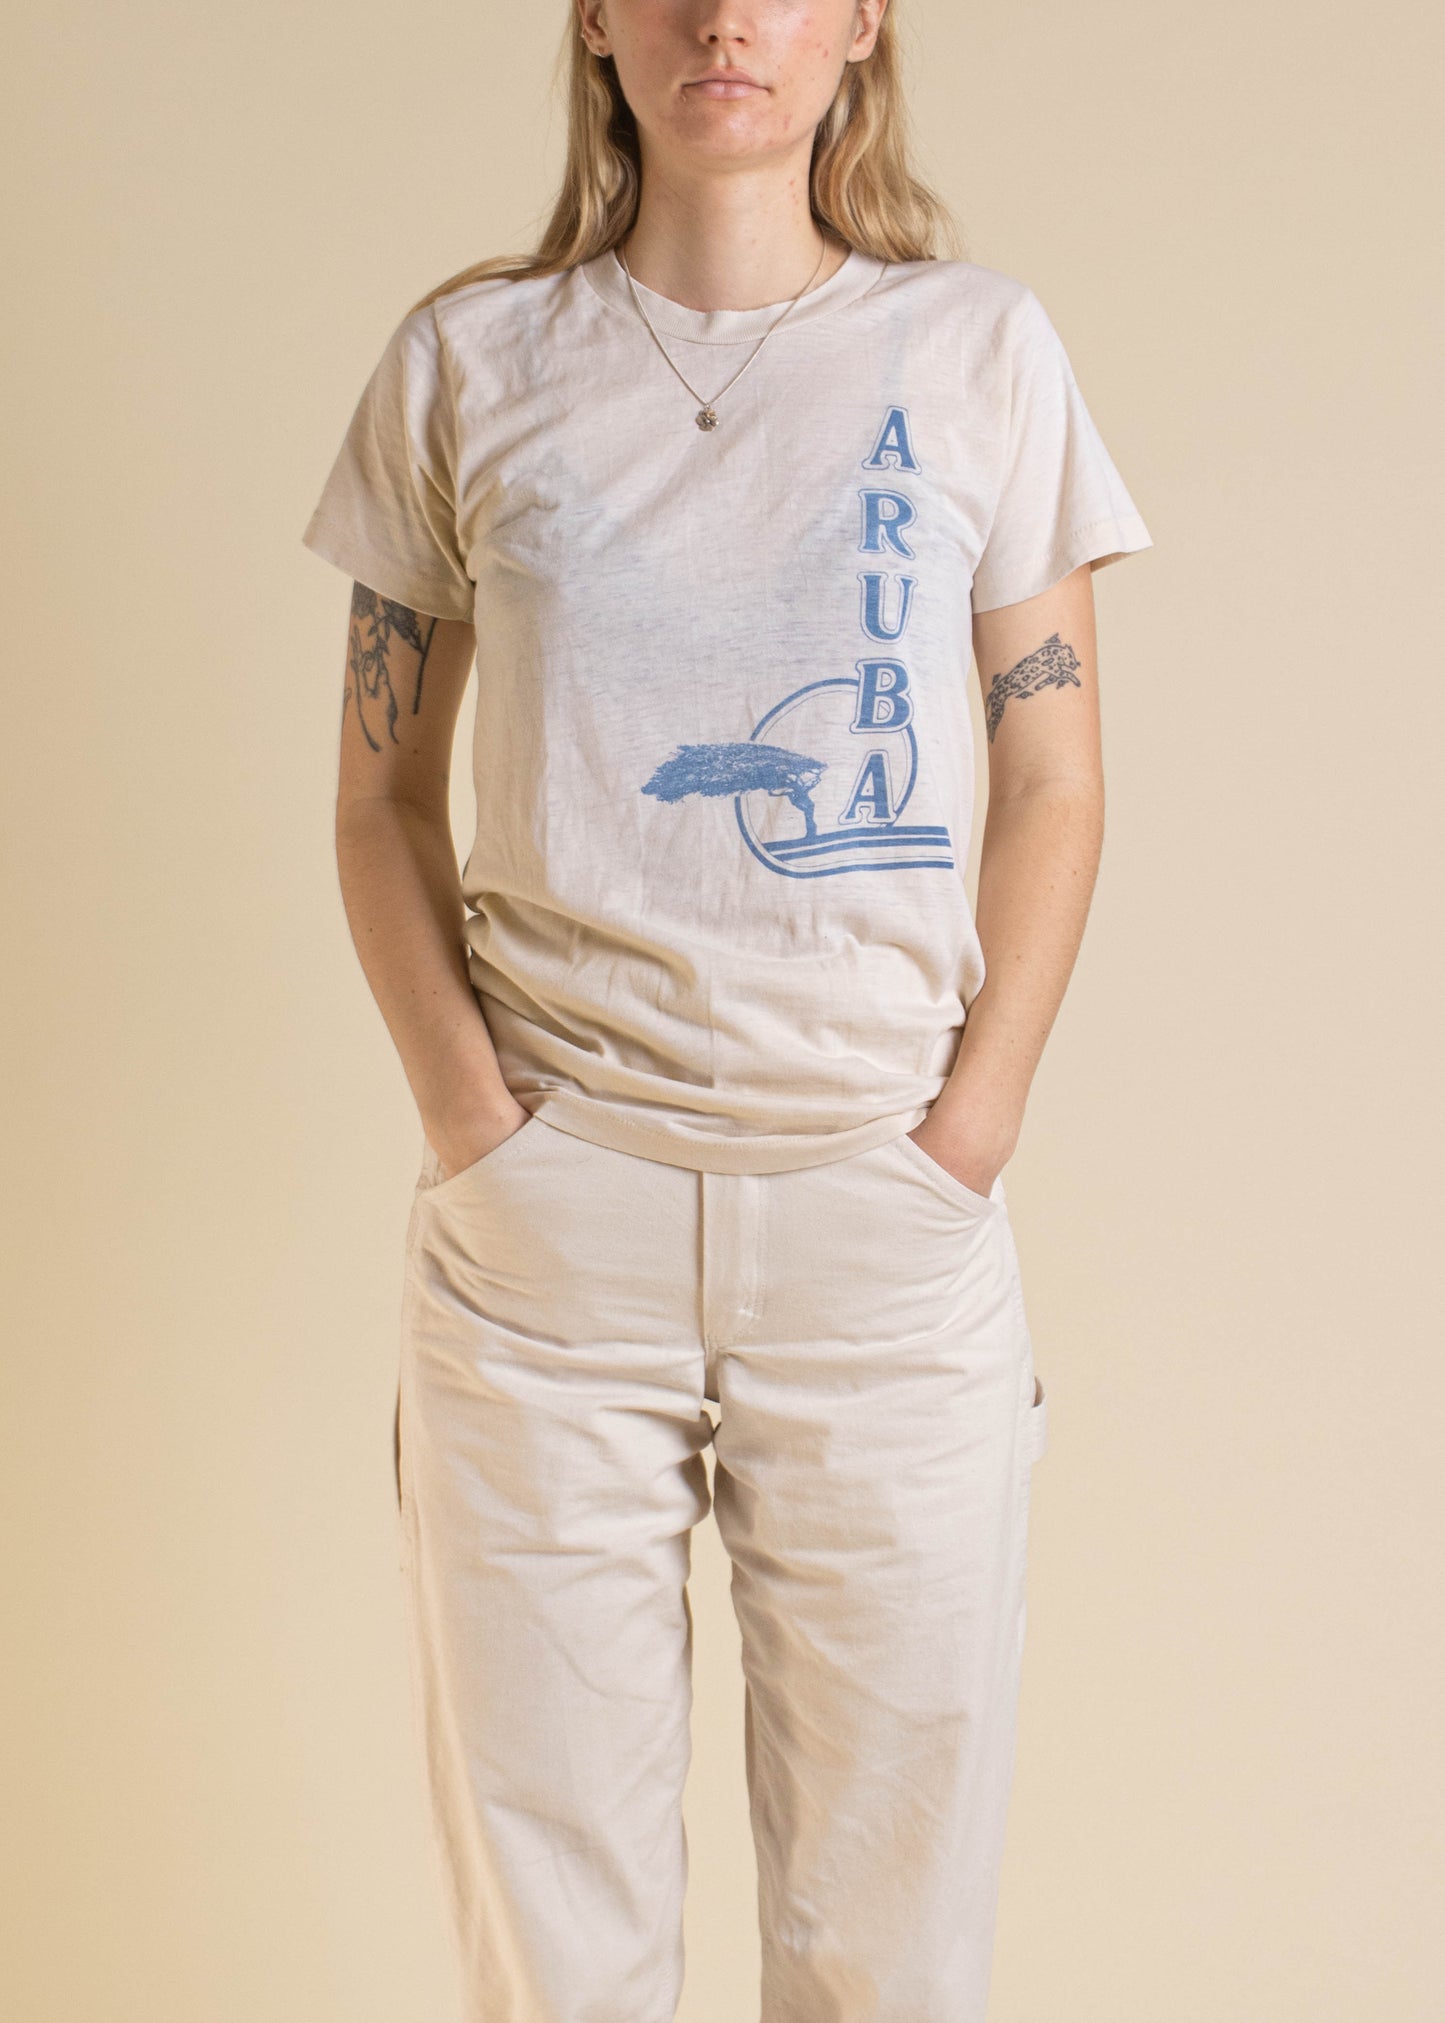 1970s Aruba Souvenir T-Shirt Size XS/S